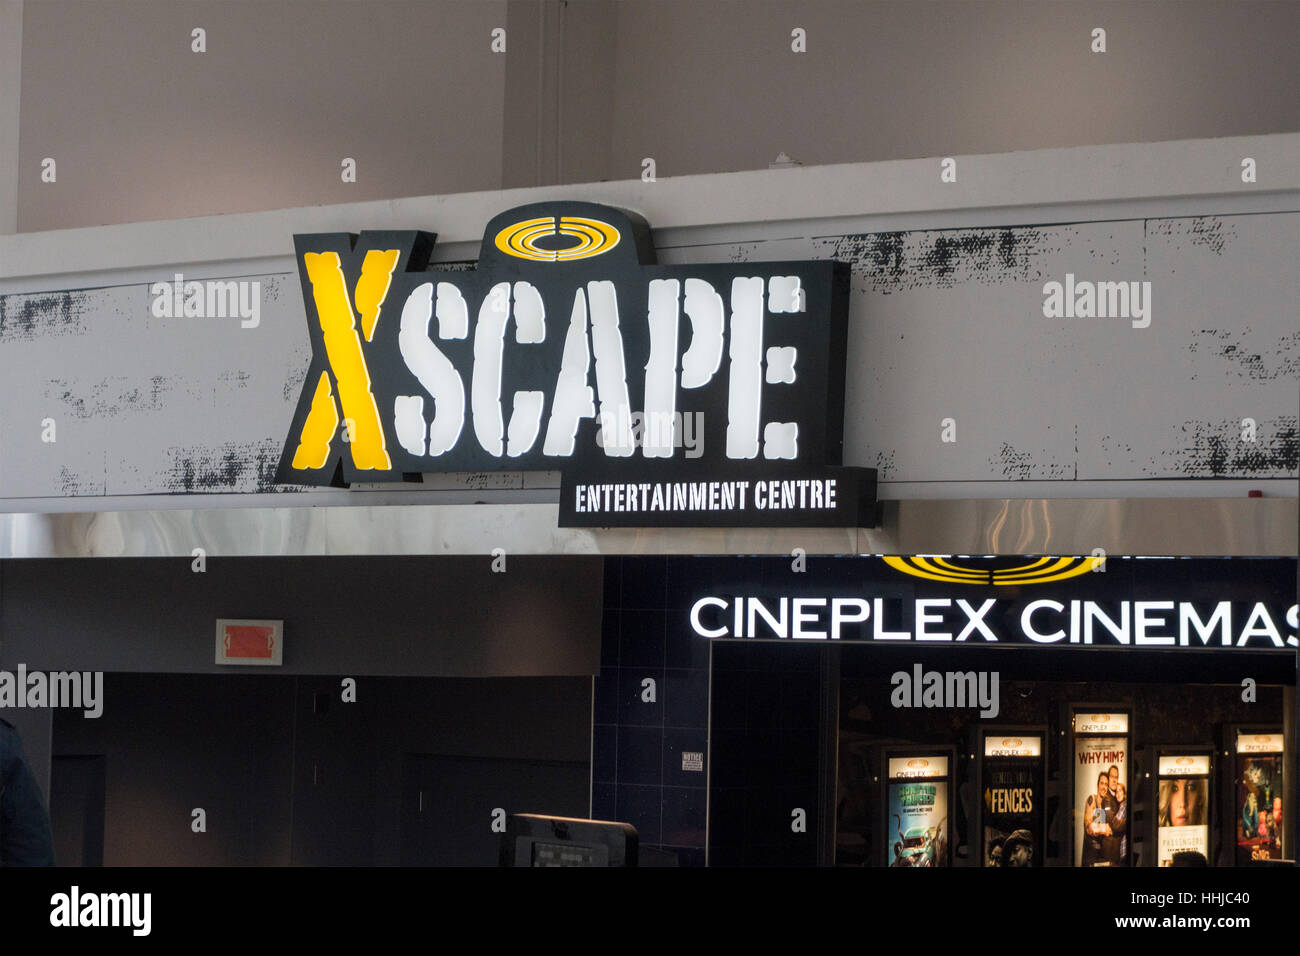 Entrée au centre de divertissement Xcape au cinémas Cineplex au Scarborough Town Centre à Toronto, Ontario, Canada Banque D'Images